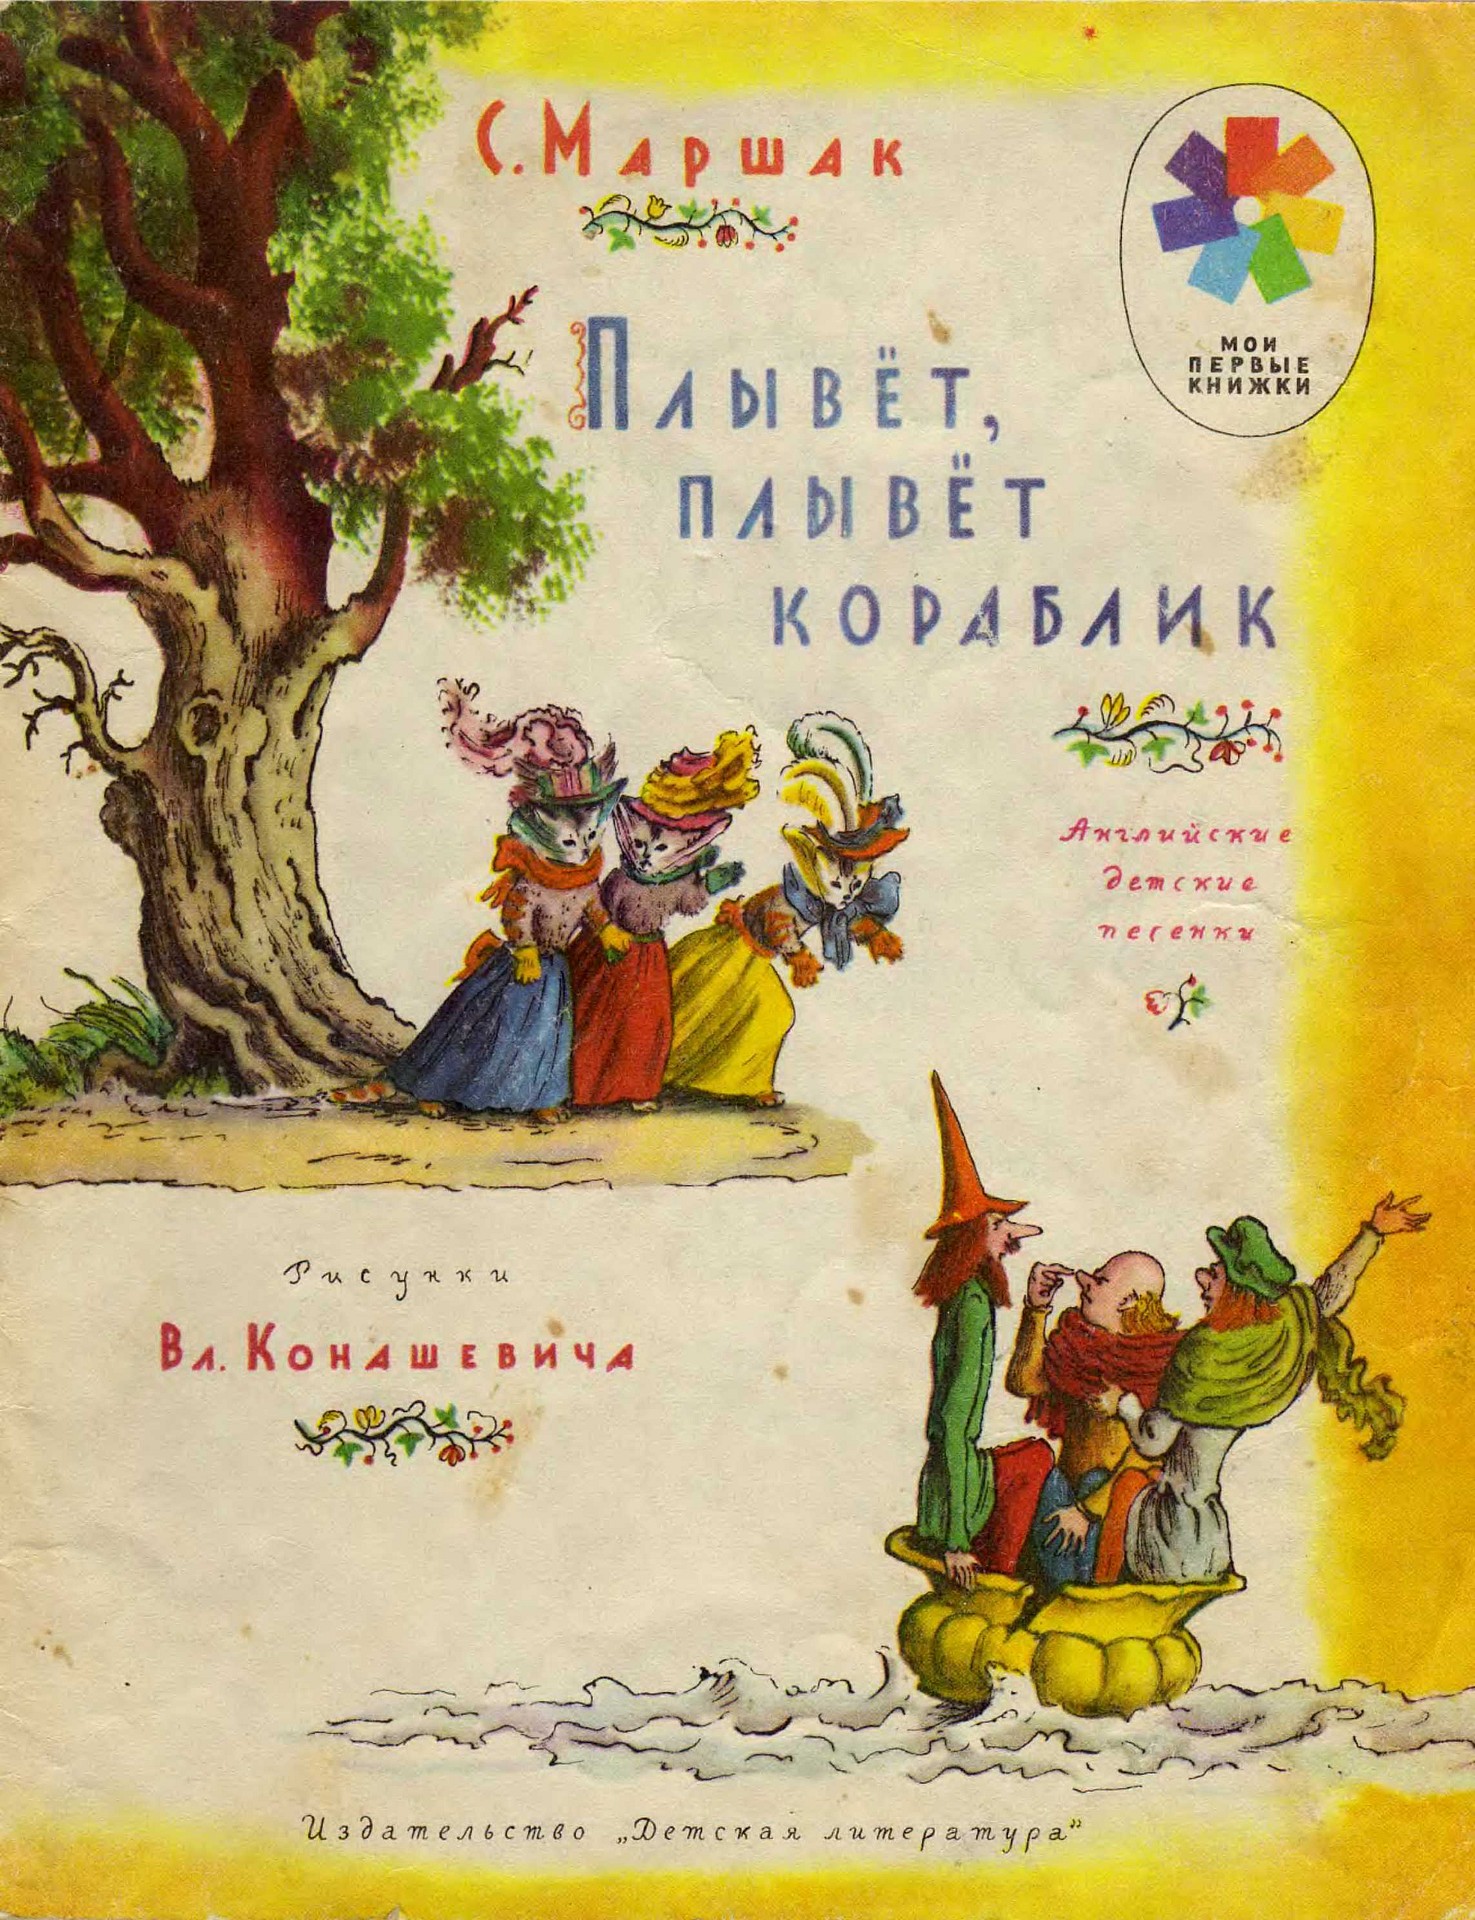 Иллюстрации конашевича к детским книгам